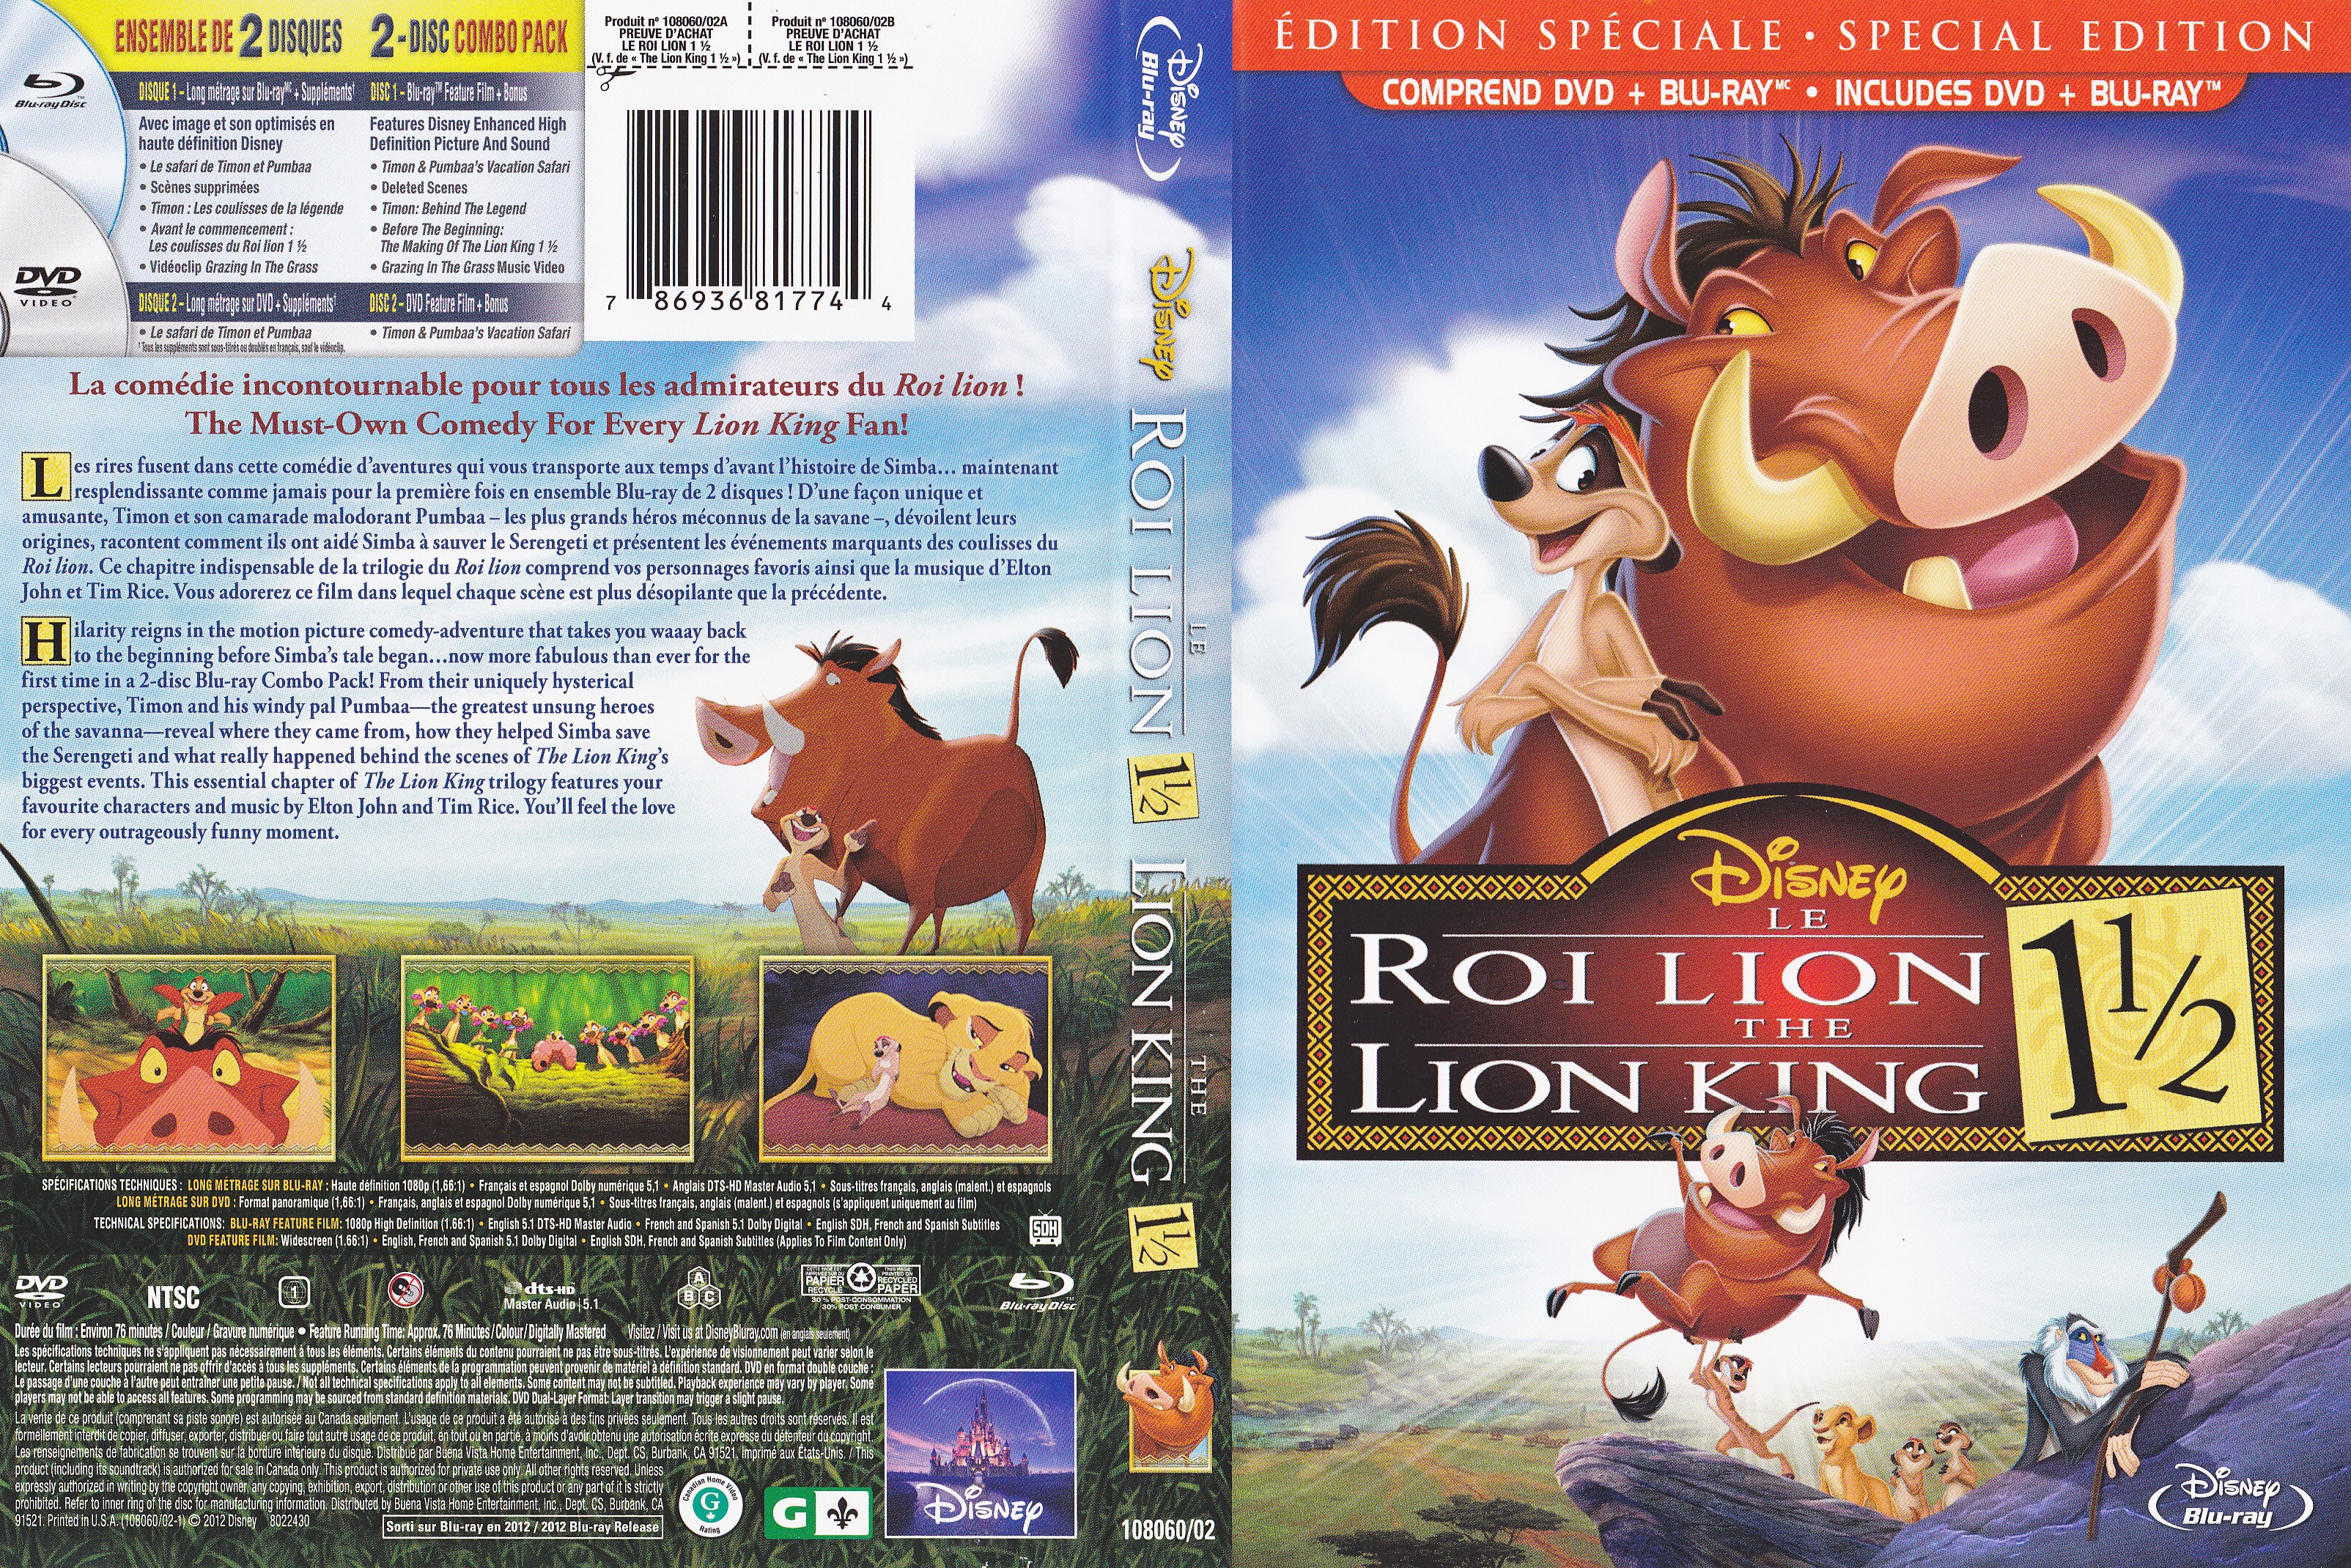 Jaquette DVD Le roi lion 1 et demie (Canadienne) (BLU-RAY)